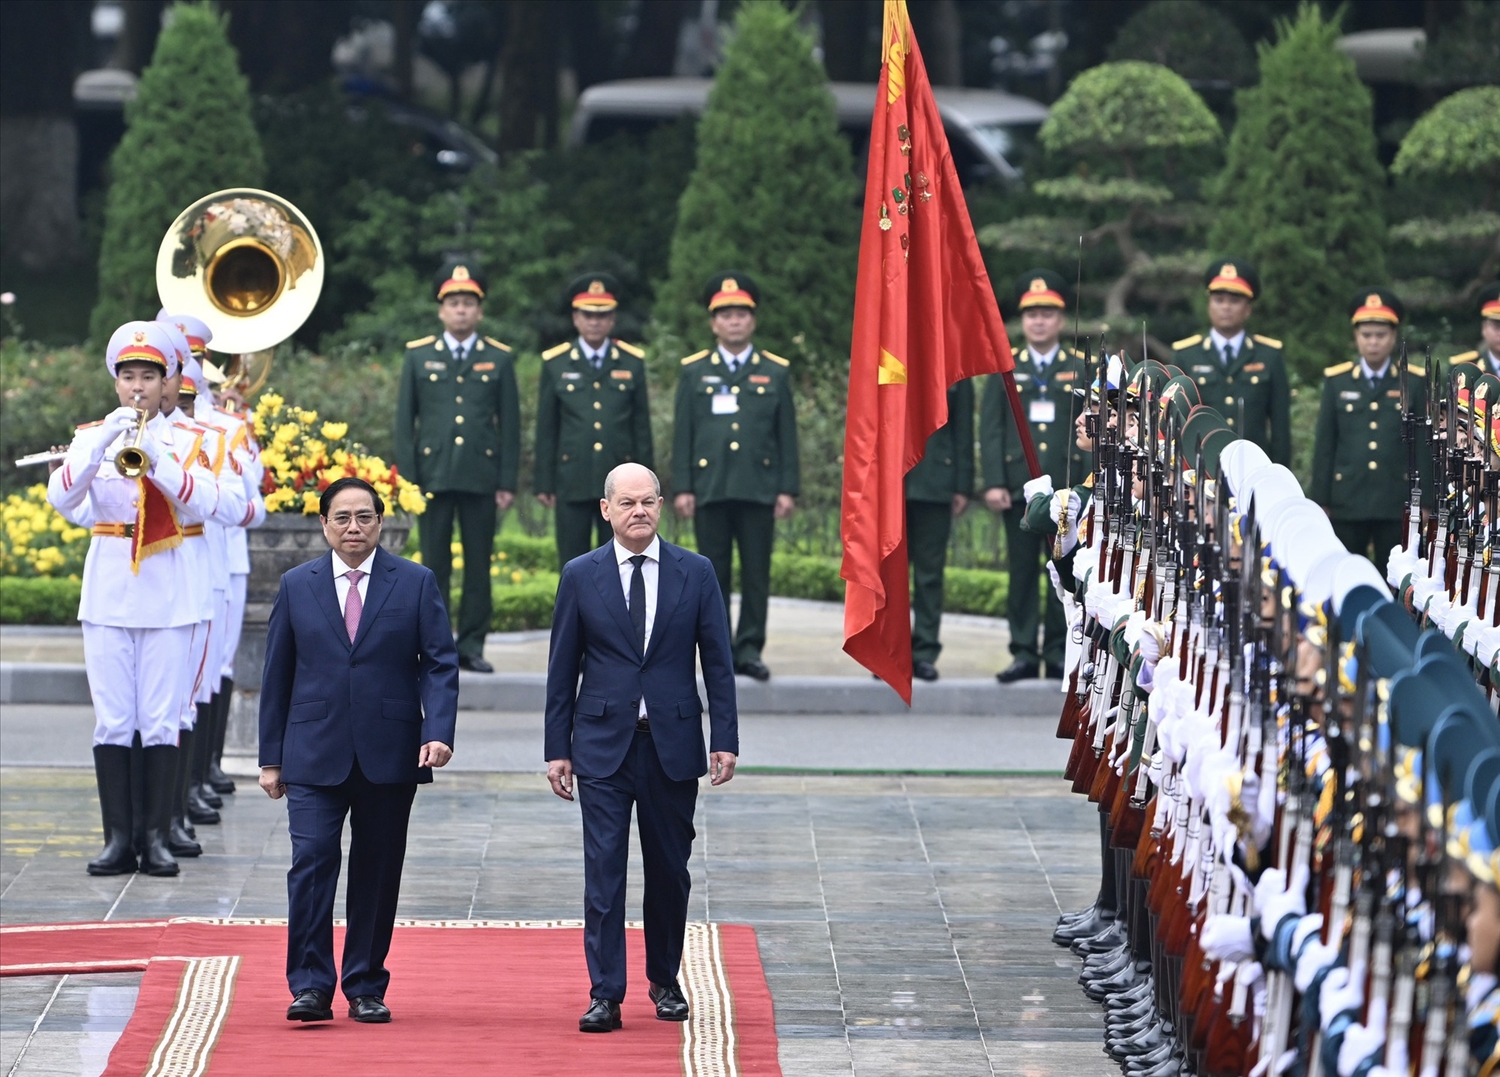 Lễ đón được tổ chức trọng thể theo nghi thức dành cho người đứng đầu Chính phủ thăm chính thức Việt Nam - Ảnh: VGP/Nhật Bắc